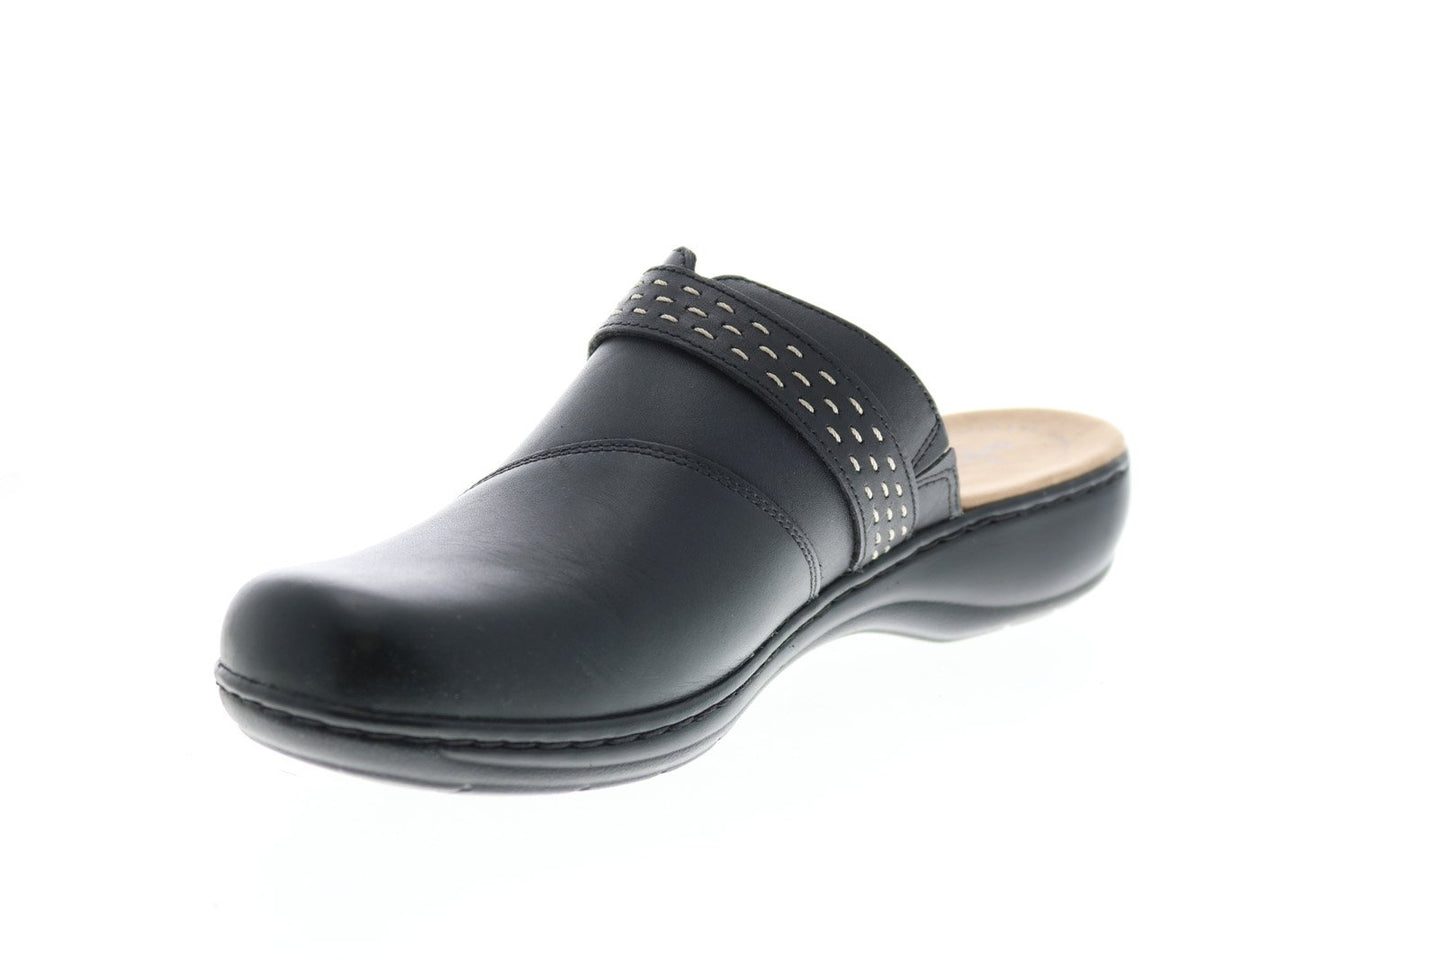 Clarks Leisa Sadie Leather 26128995 Womens Black Flip-Flops Sandals Sh ...